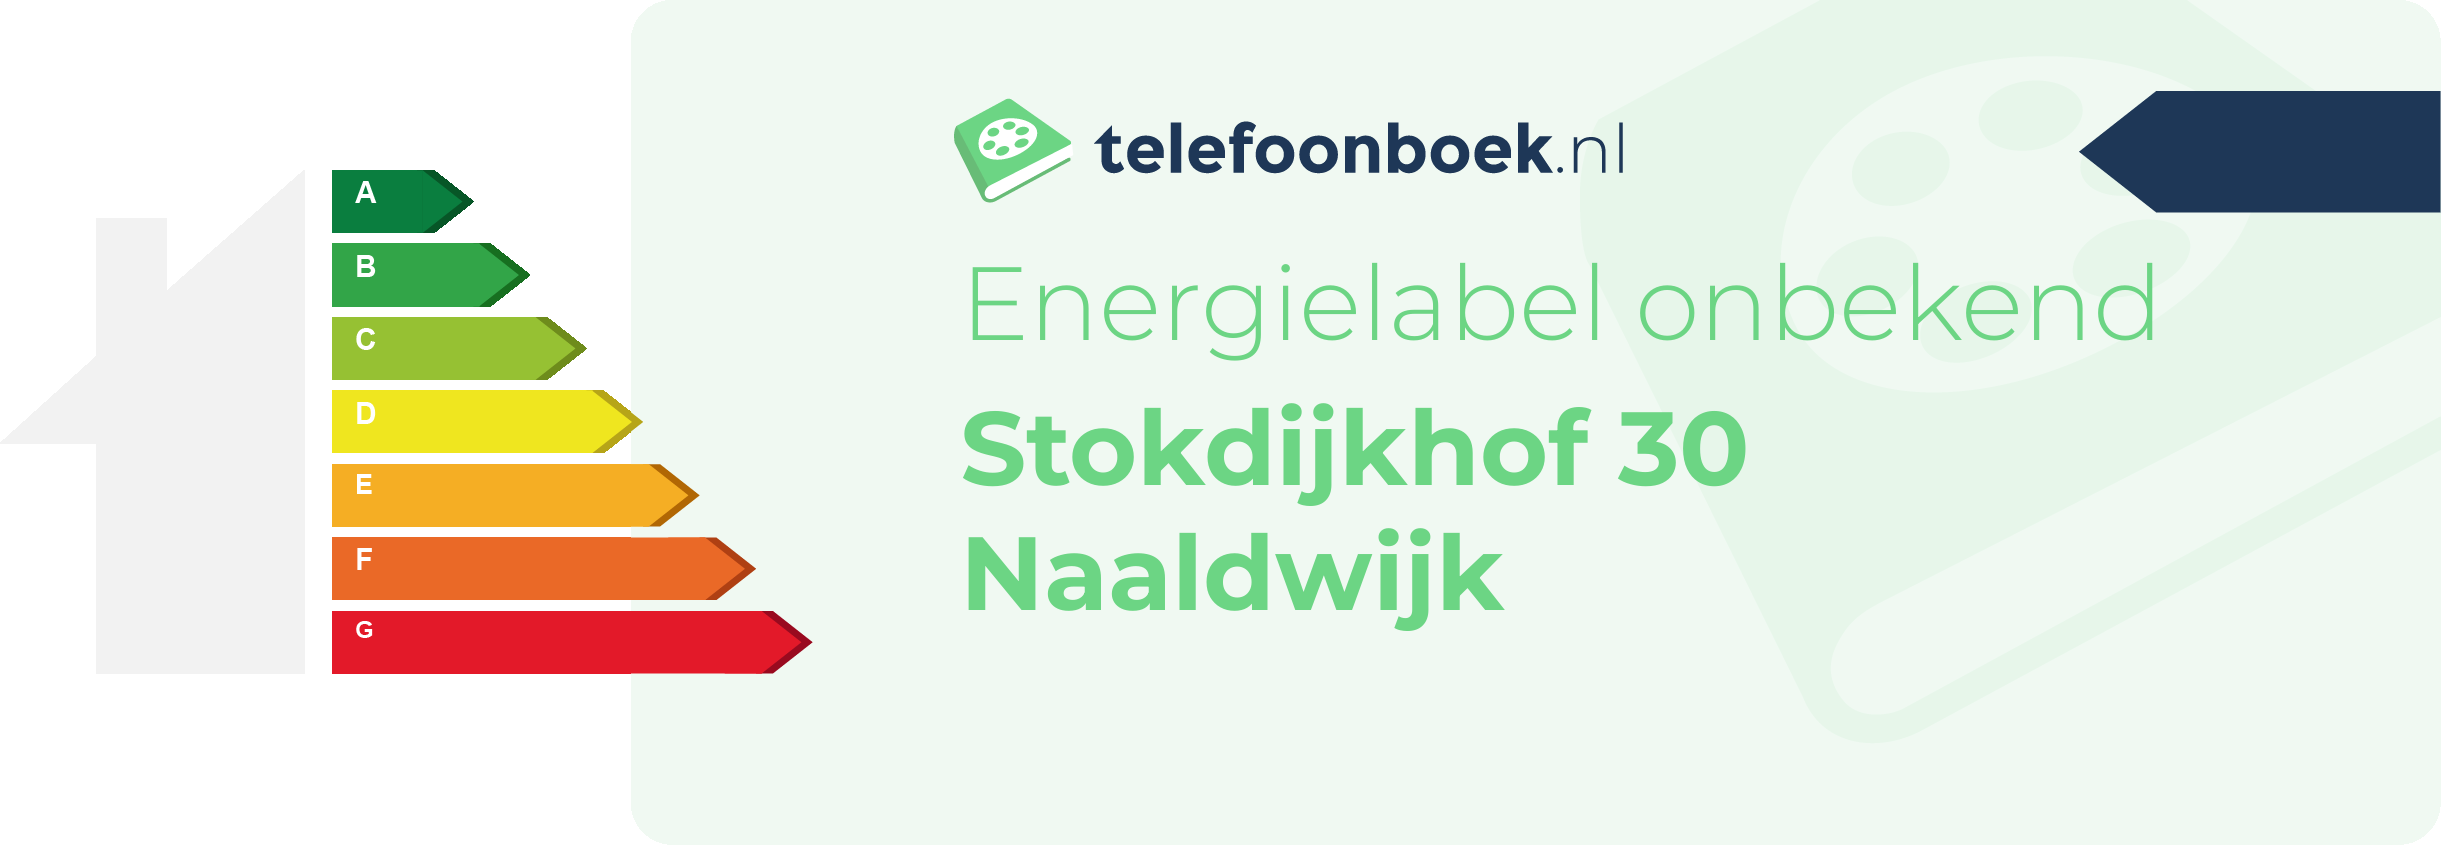 Energielabel Stokdijkhof 30 Naaldwijk